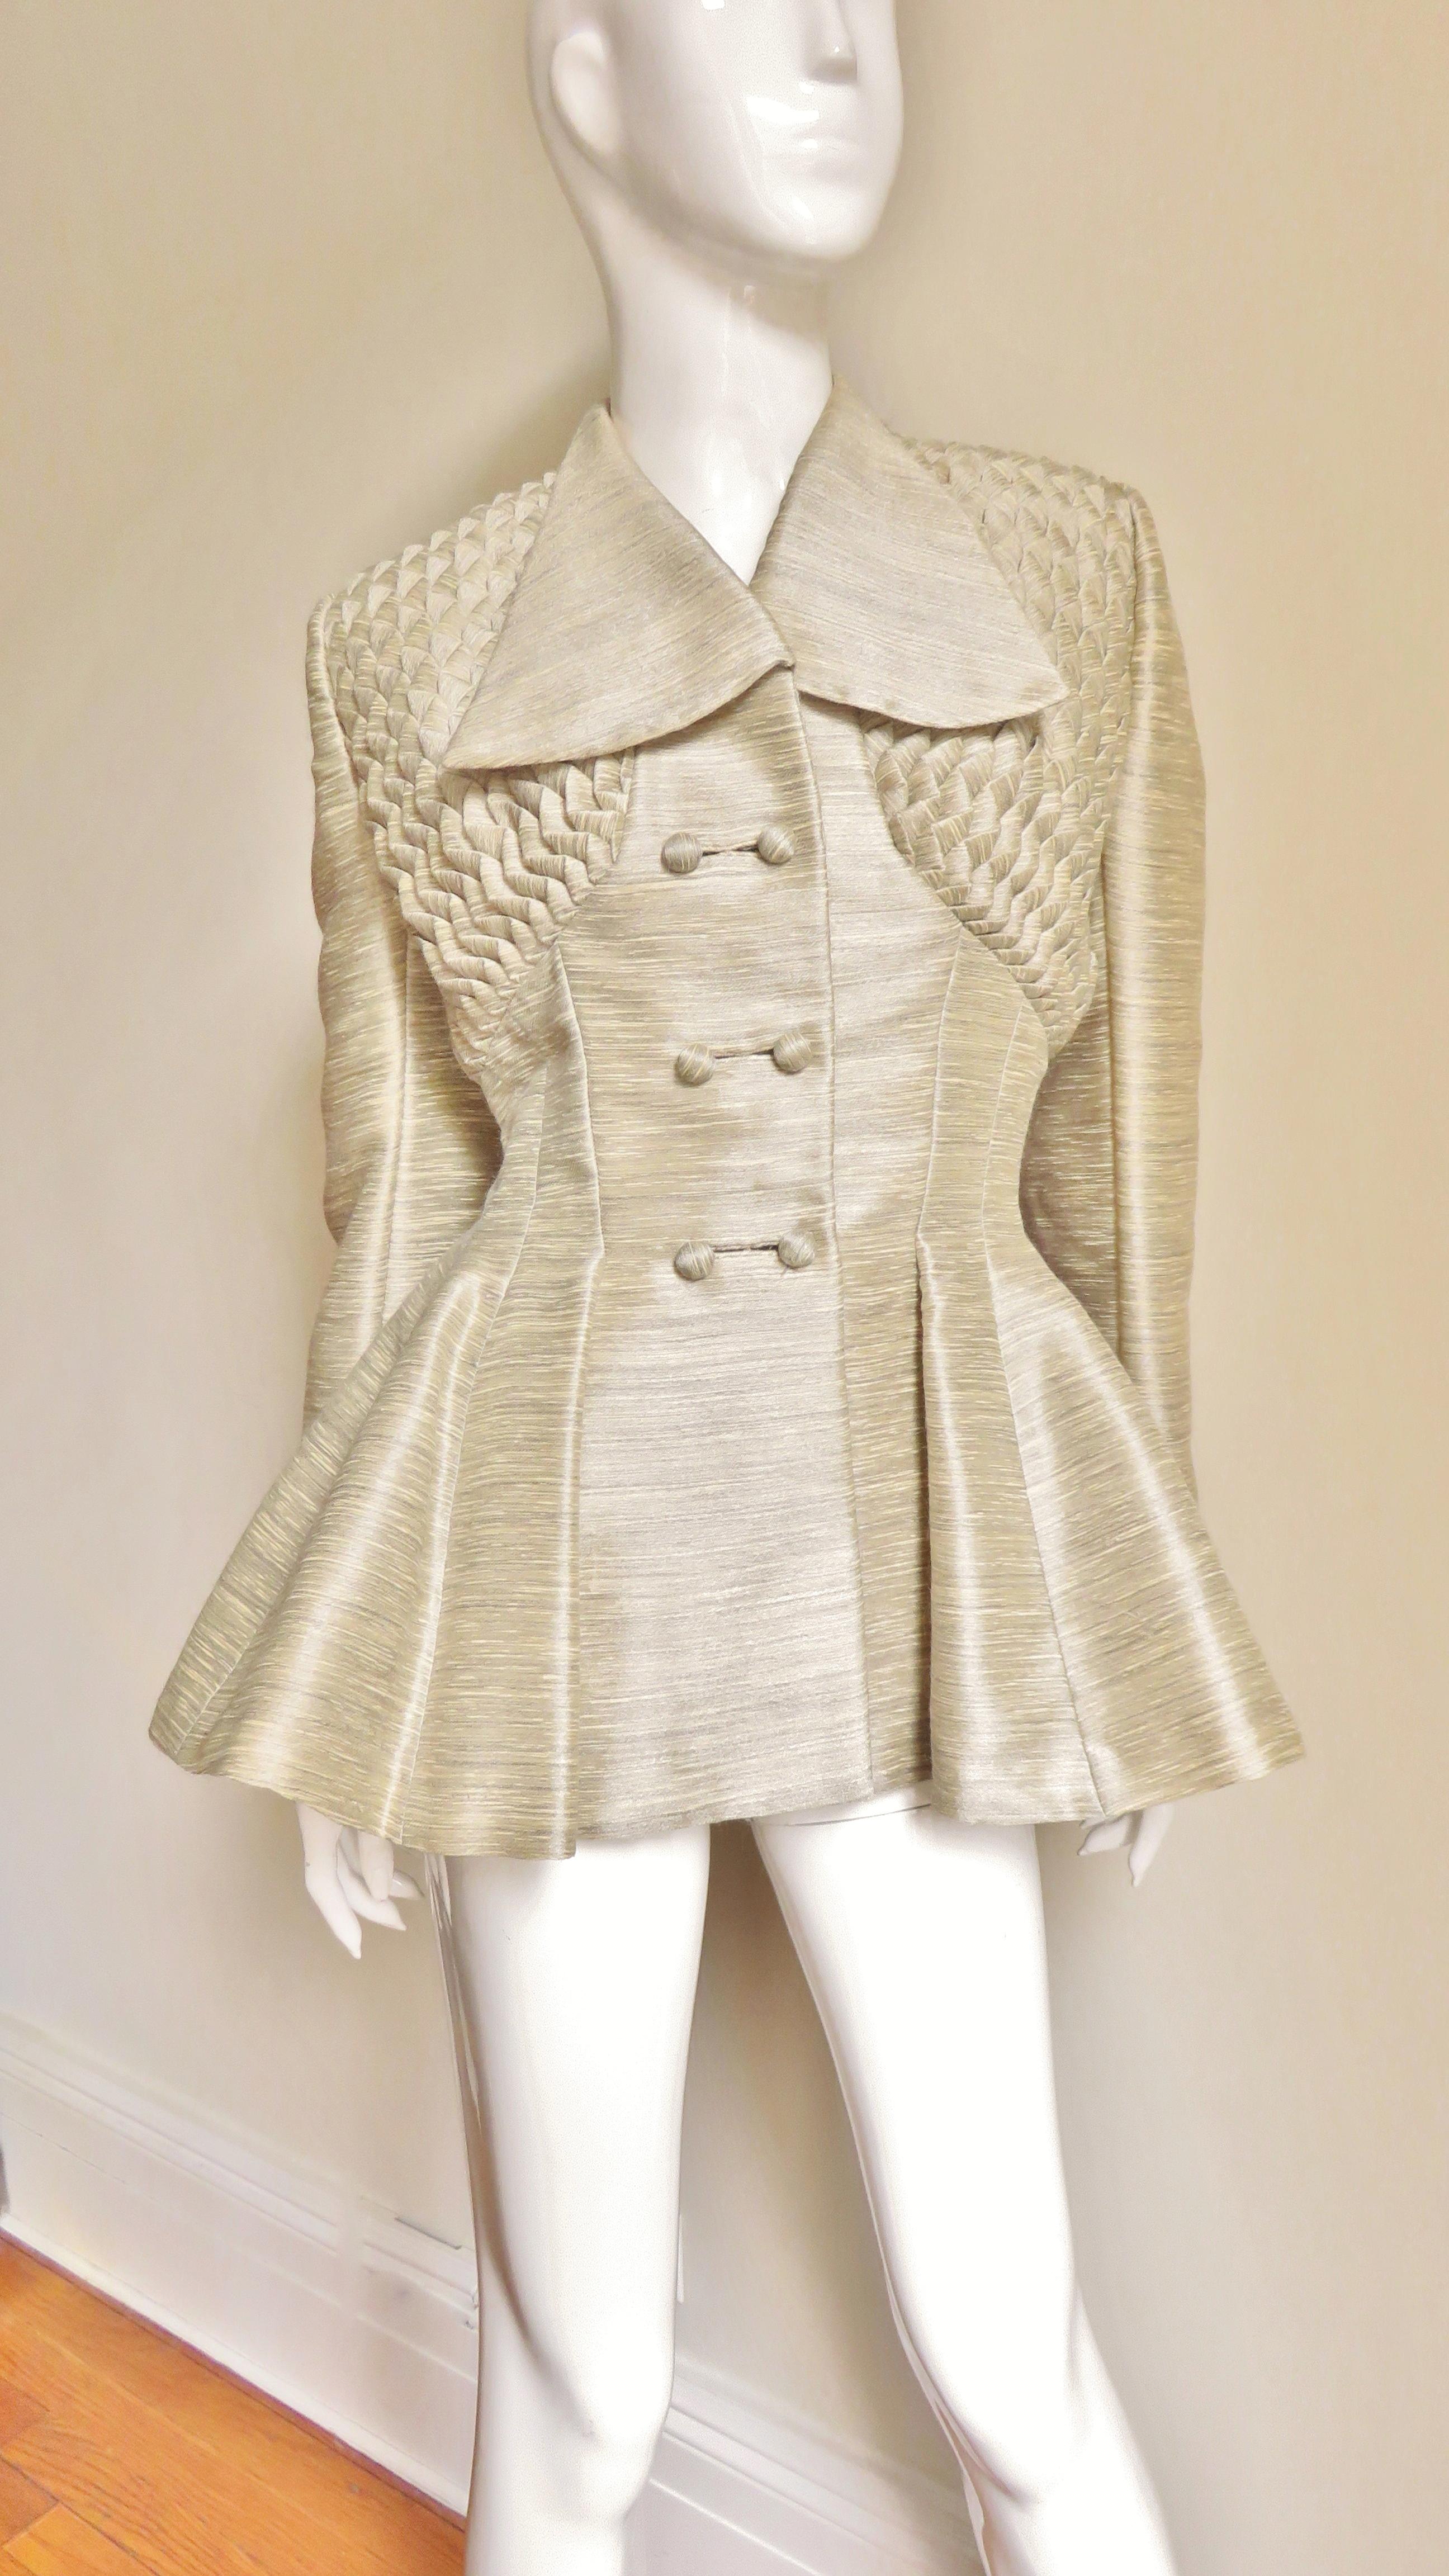 Une fabuleuse veste ajustée en soie et laine beige et grise des années 1940 de Lilli Ann.  La veste à double boutonnage est dotée d'un col à oreilles, de manches longues avec poignets repliés et de boutons boules recouverts à l'avant, avec